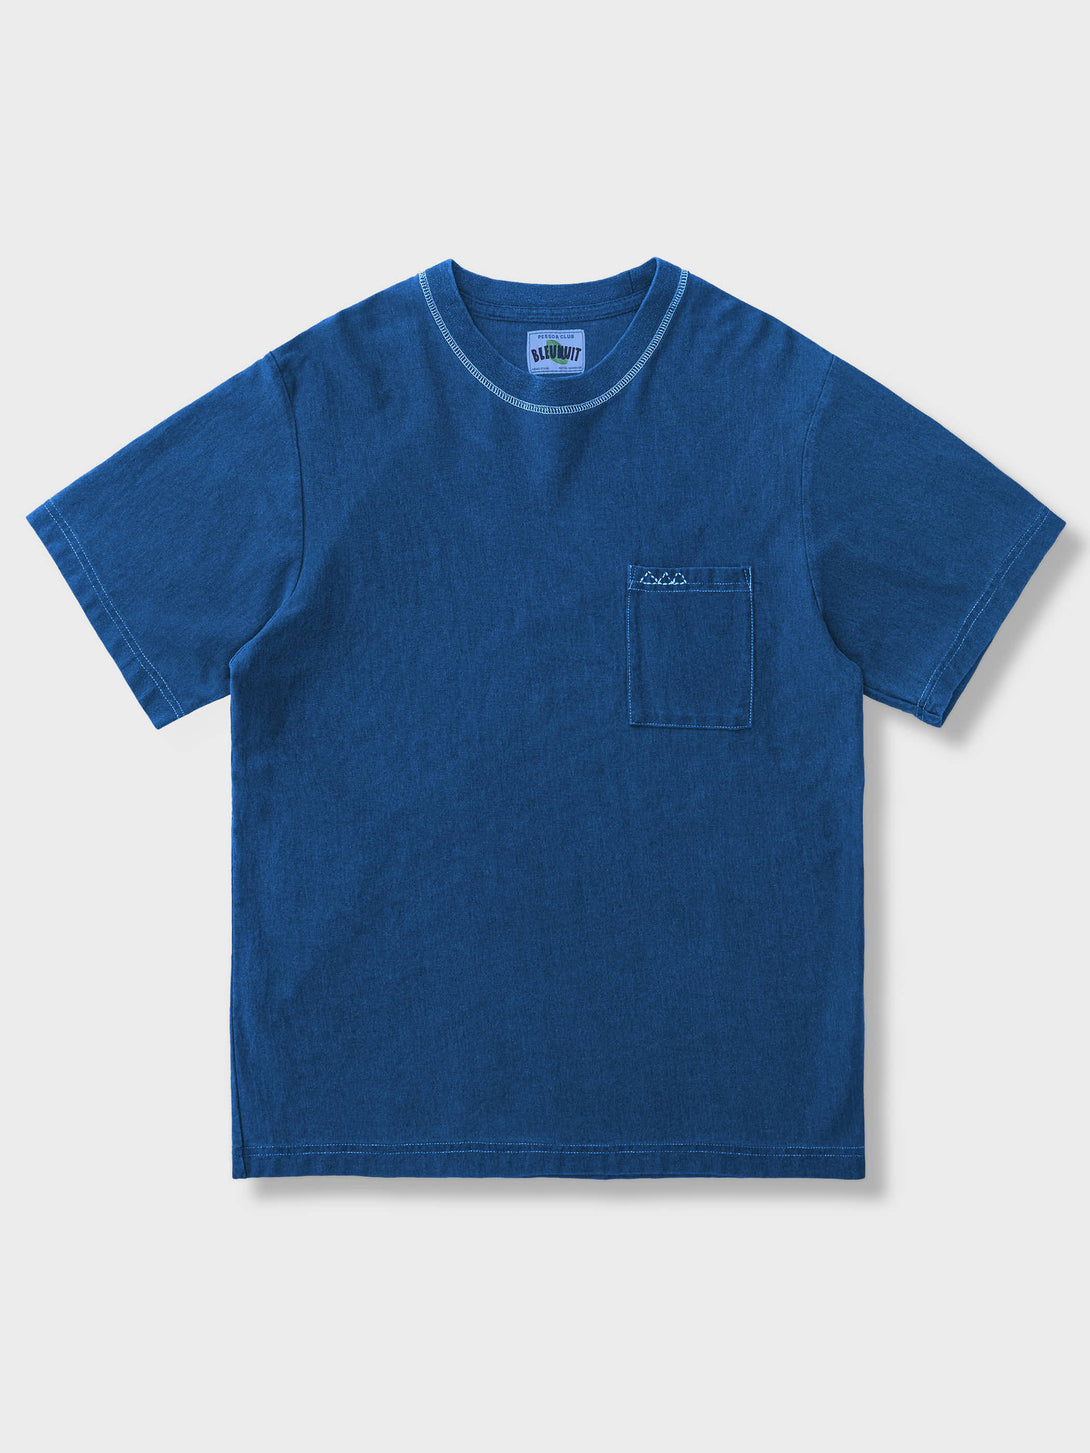 pessoaオリジナル藍染半袖Tシャツ、手作りの三角刺子ポケットがフロントに配置